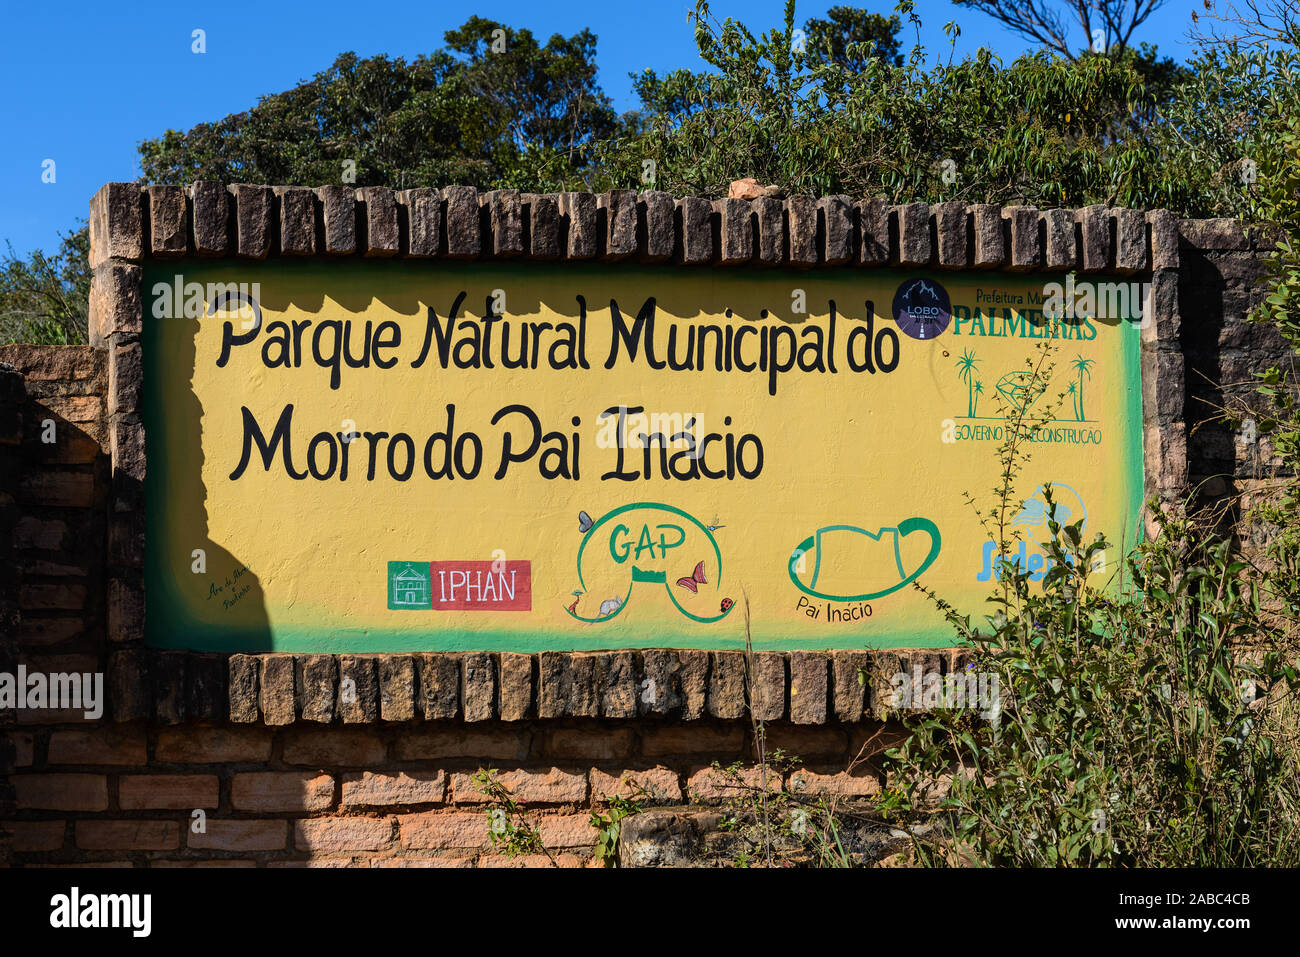 Signe d'un parc naturel, le Parc Naturel Municipal do Morro do Pai Inacio. Lencois, Bahia, Brésil. Banque D'Images